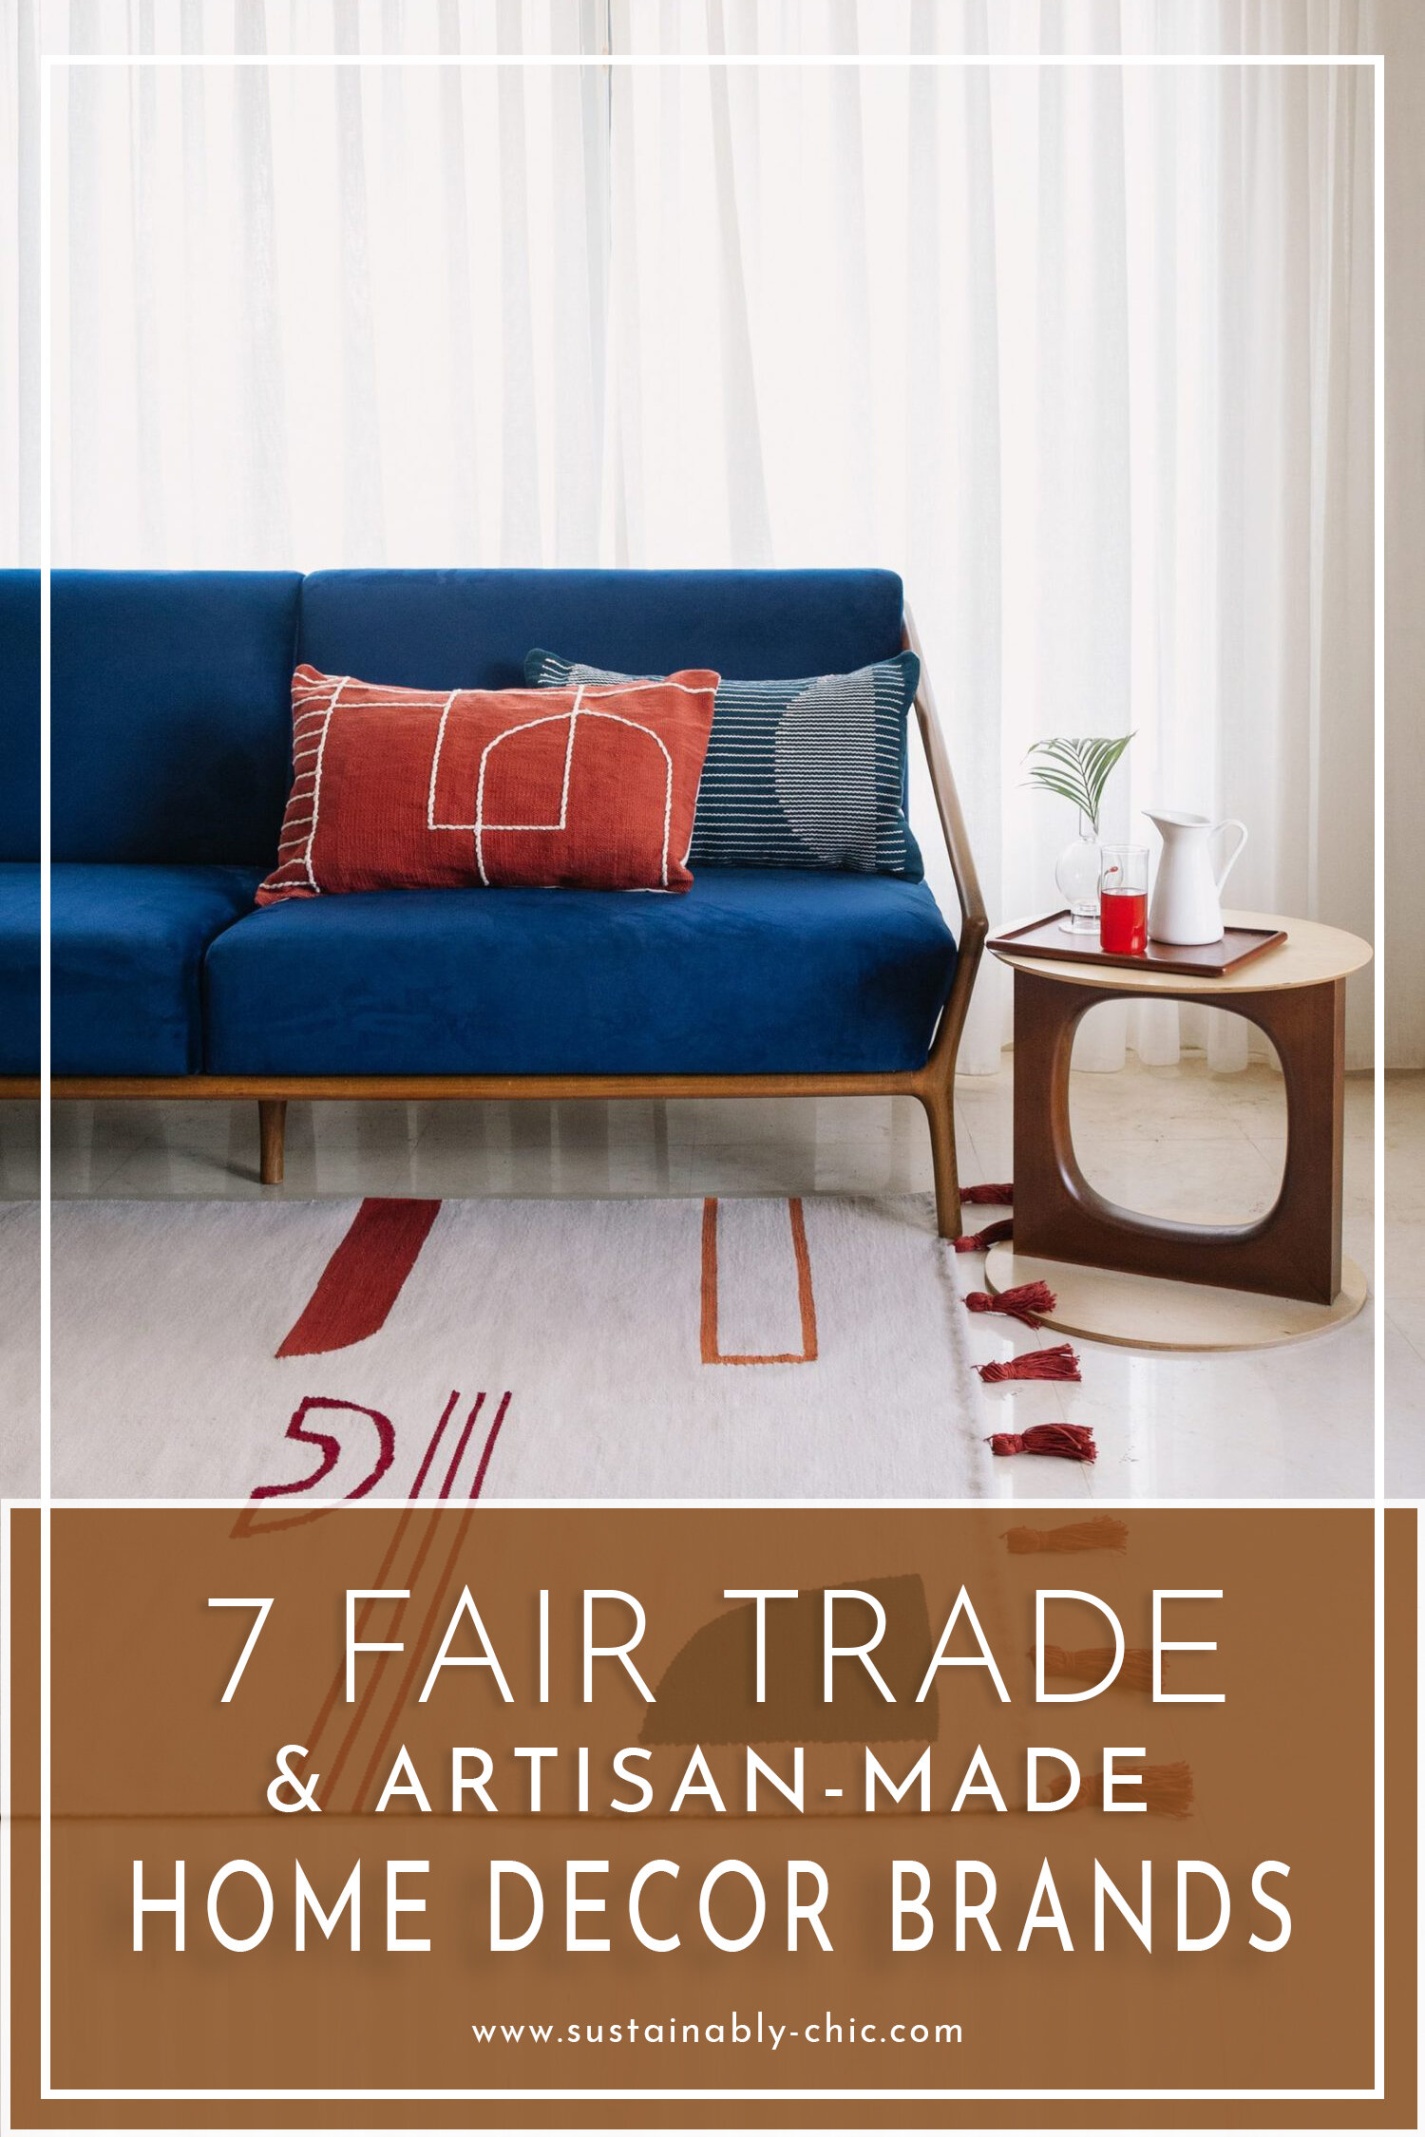 home decor brands Niche Utama Home  Fair Trade and Artisan-Made, Ethical Home Decor Brands